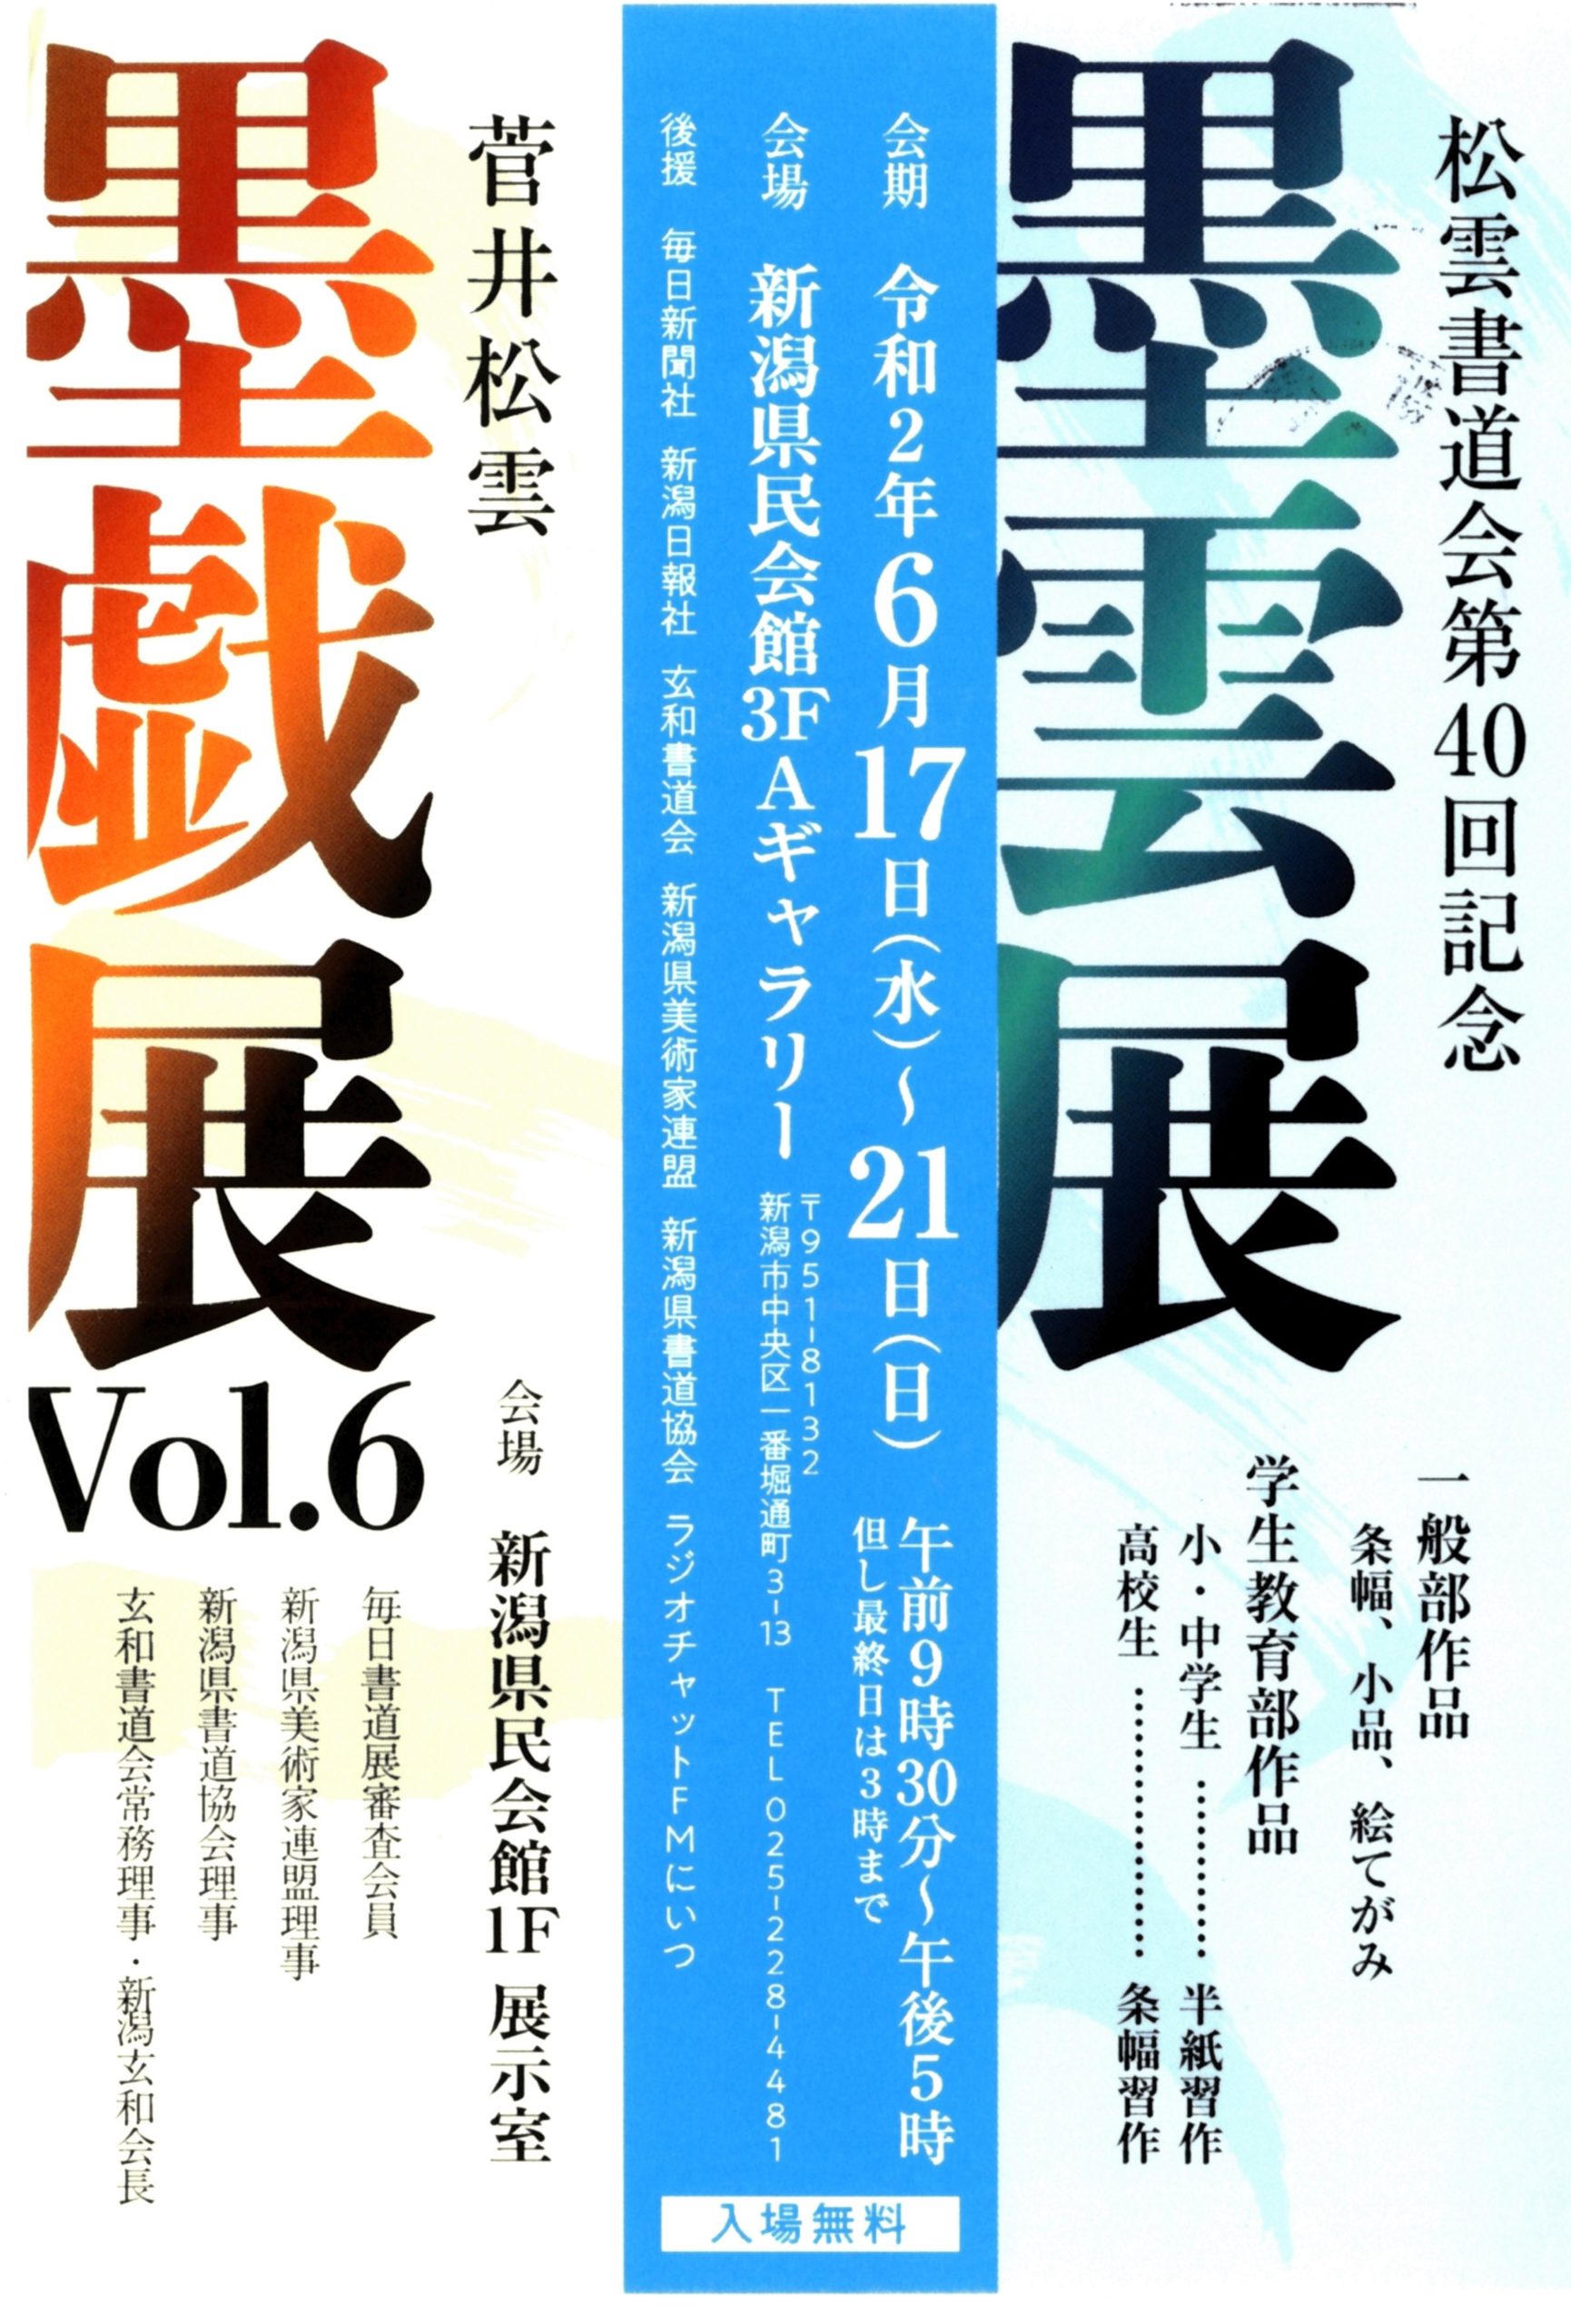 松雲書道会第40回記念「墨雲展」・『菅井松雲 墨戯展Vol.6』開催のお知らせ。